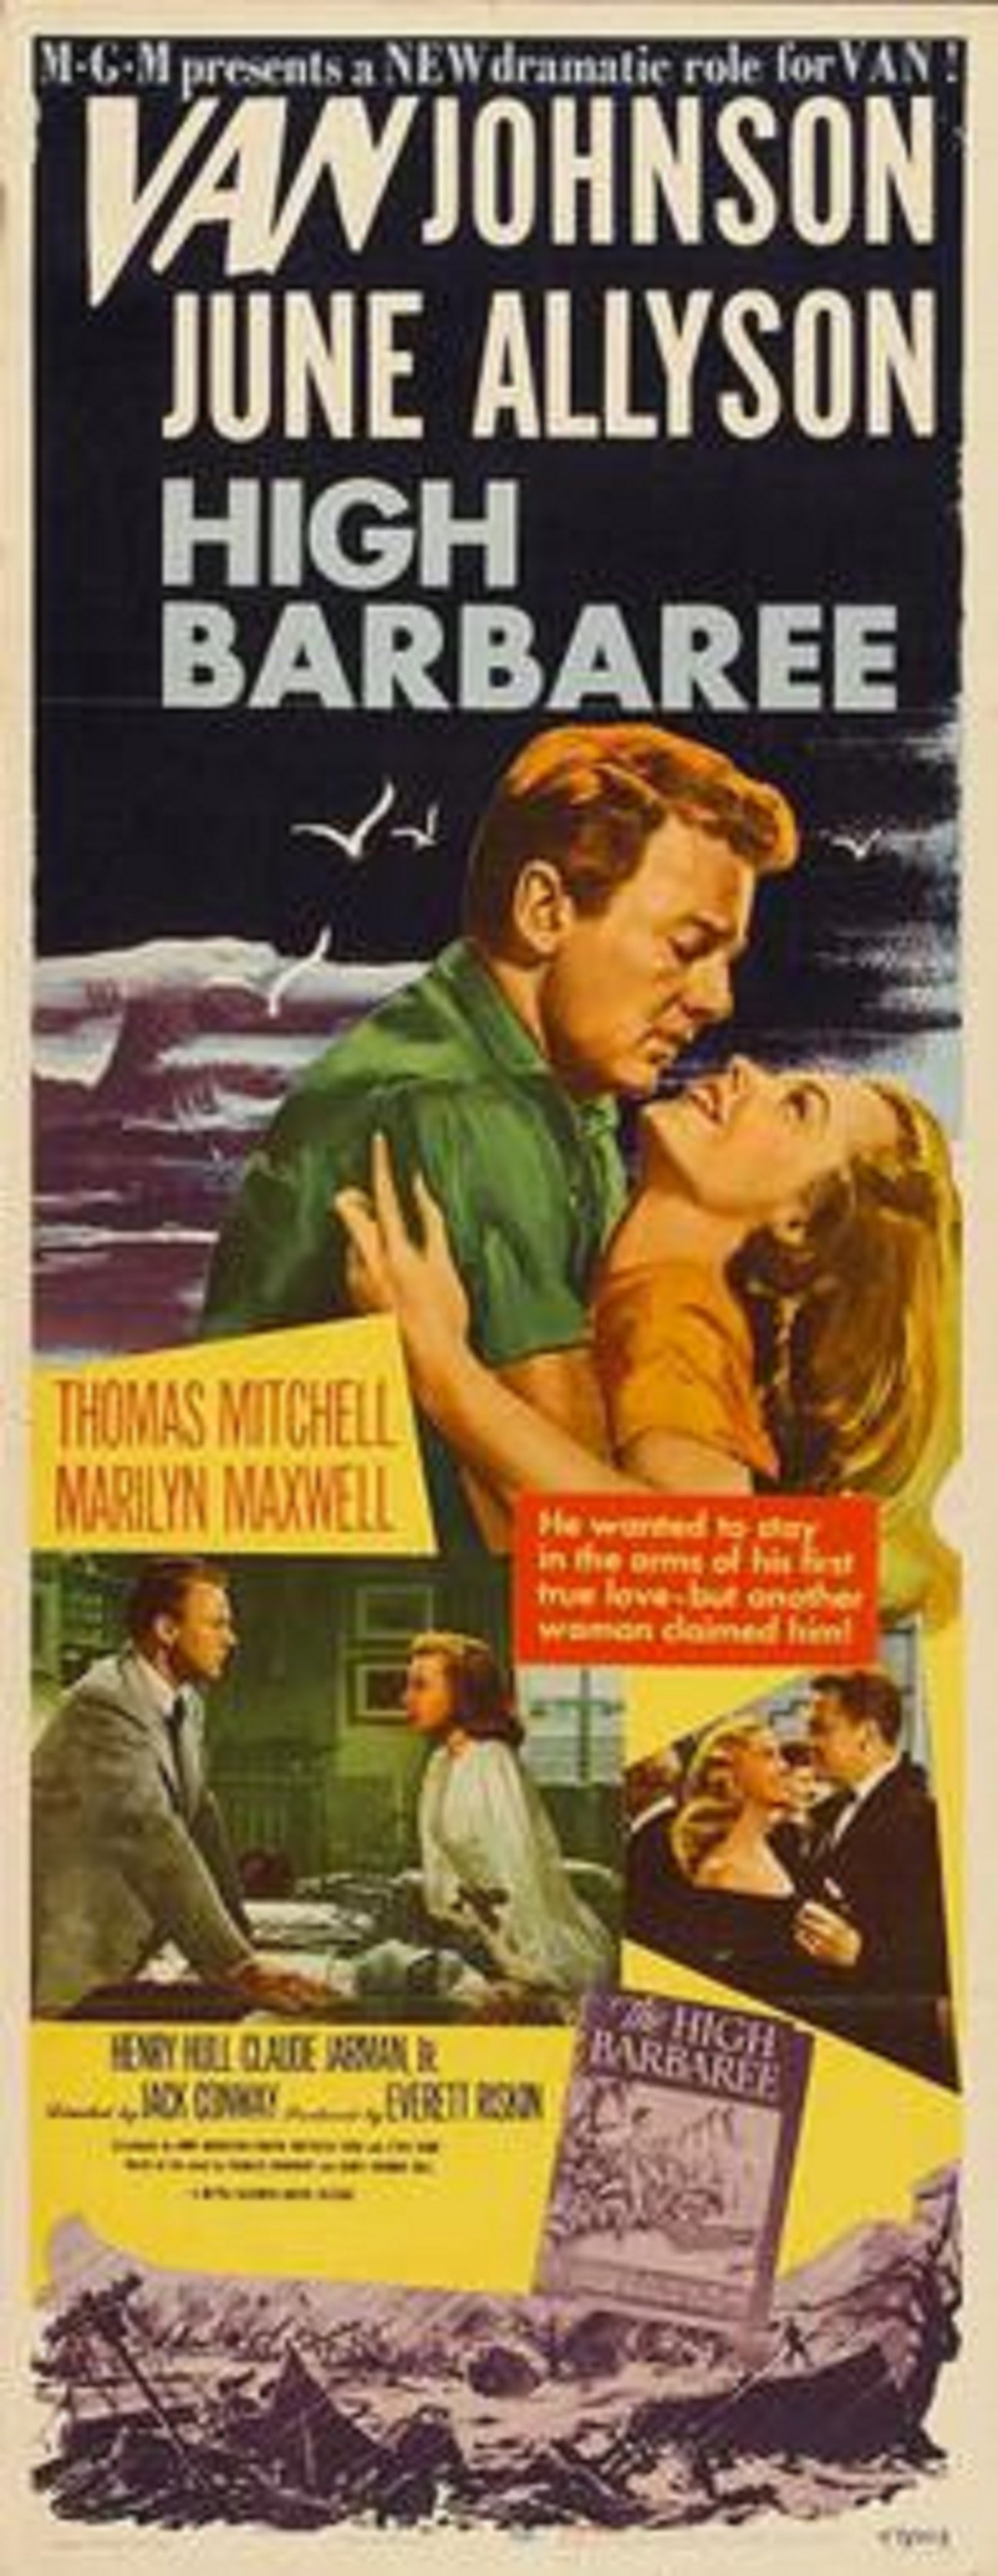 La profètica foto promocional d'un film de 1947 preveient el coronavirus